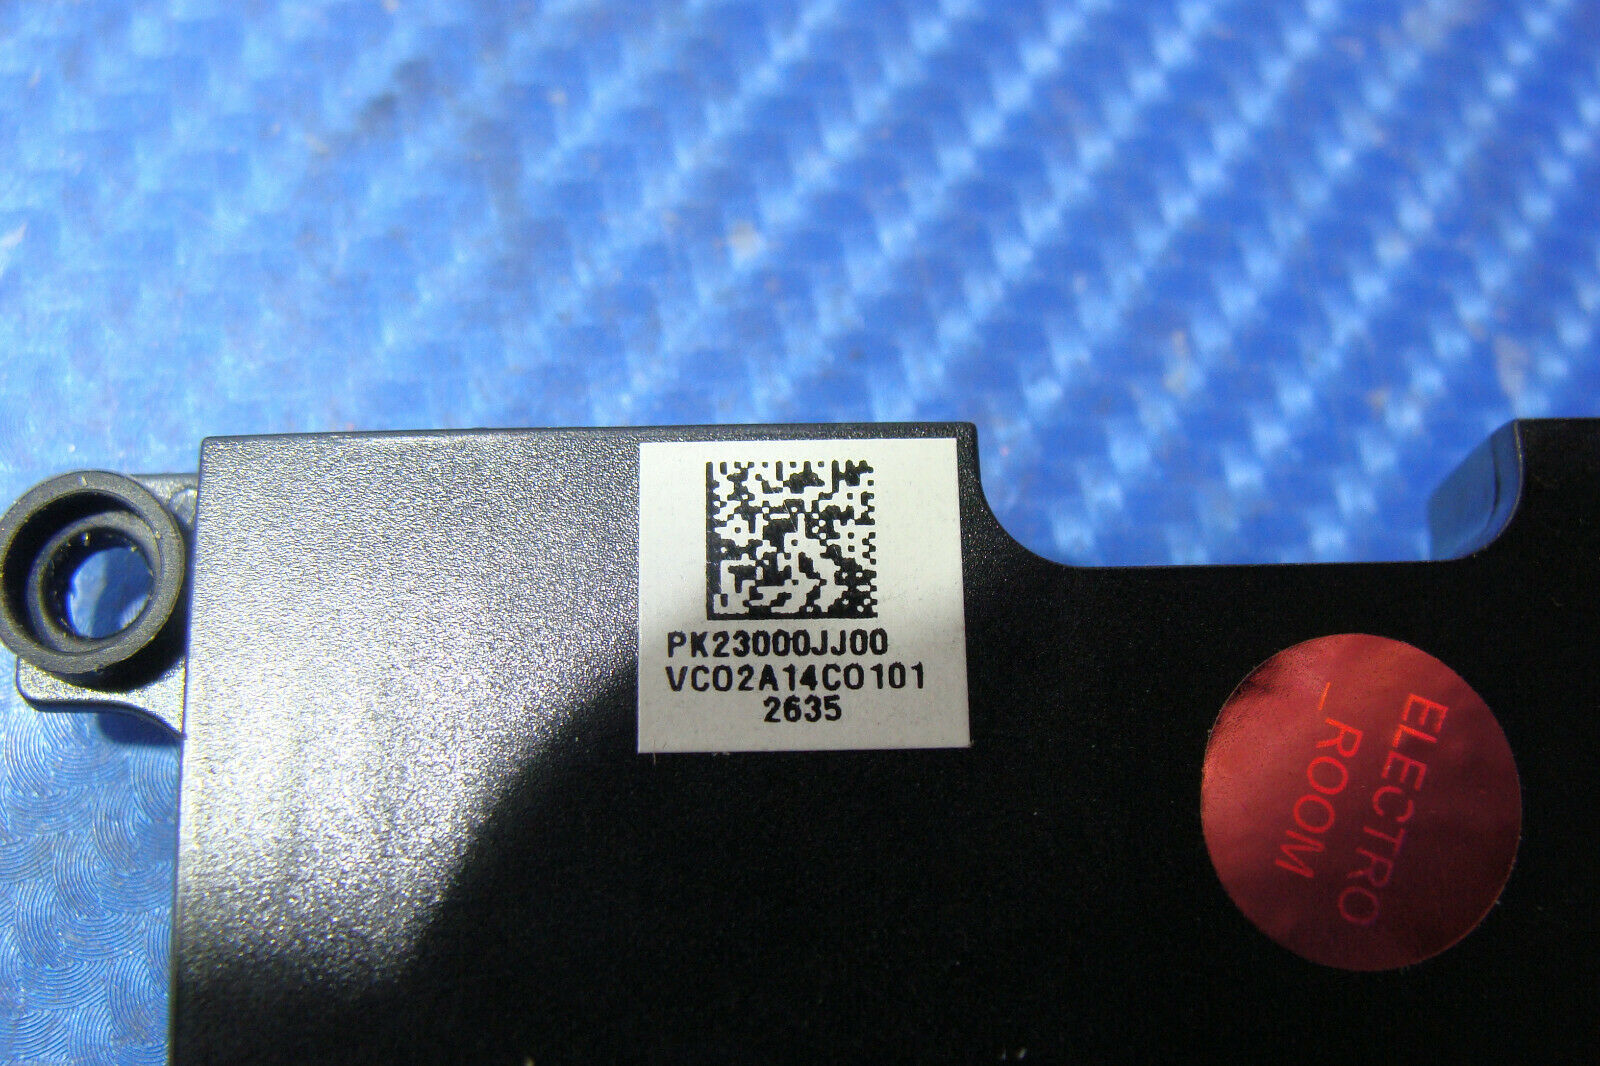 Lenovo ThinkPad T440 14